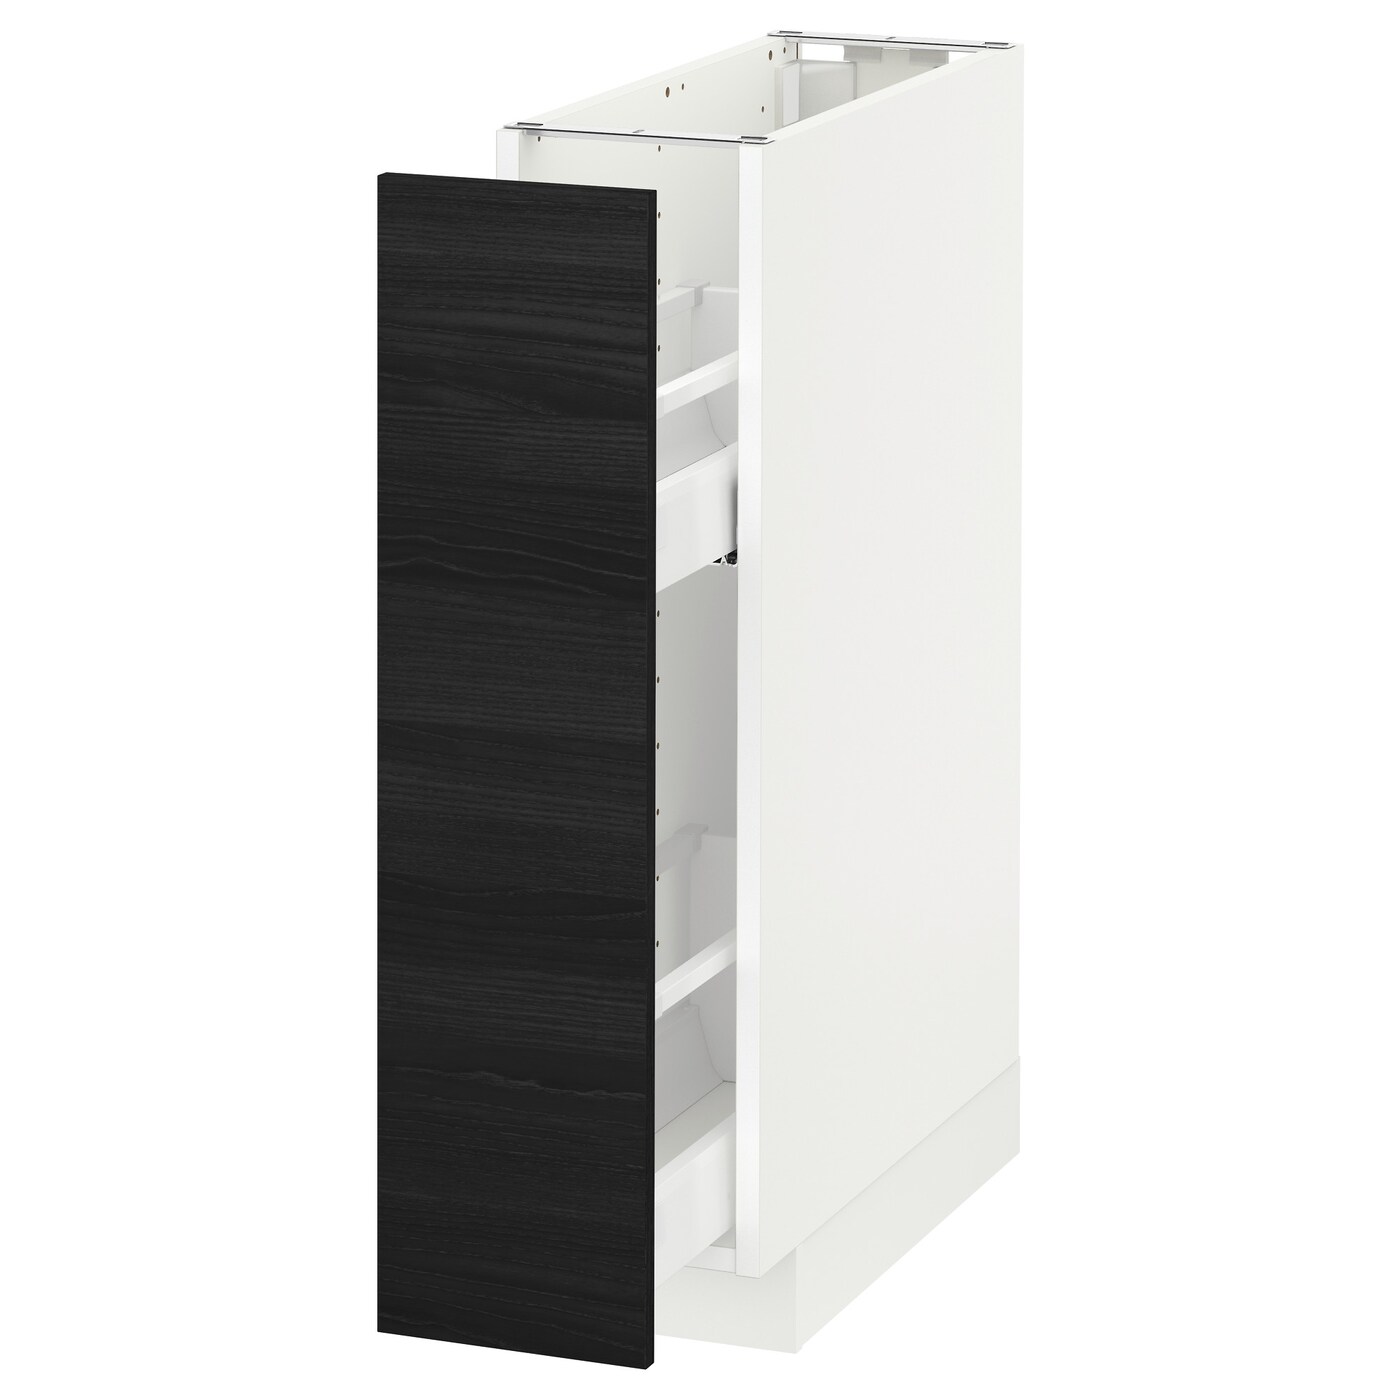 Напольный шкаф, выдвижной внутри элем, белый, Тингсрид черный 20x60 см IKEA МЕТОД 092.244.30 купить в Минске, цена 24012 рублей